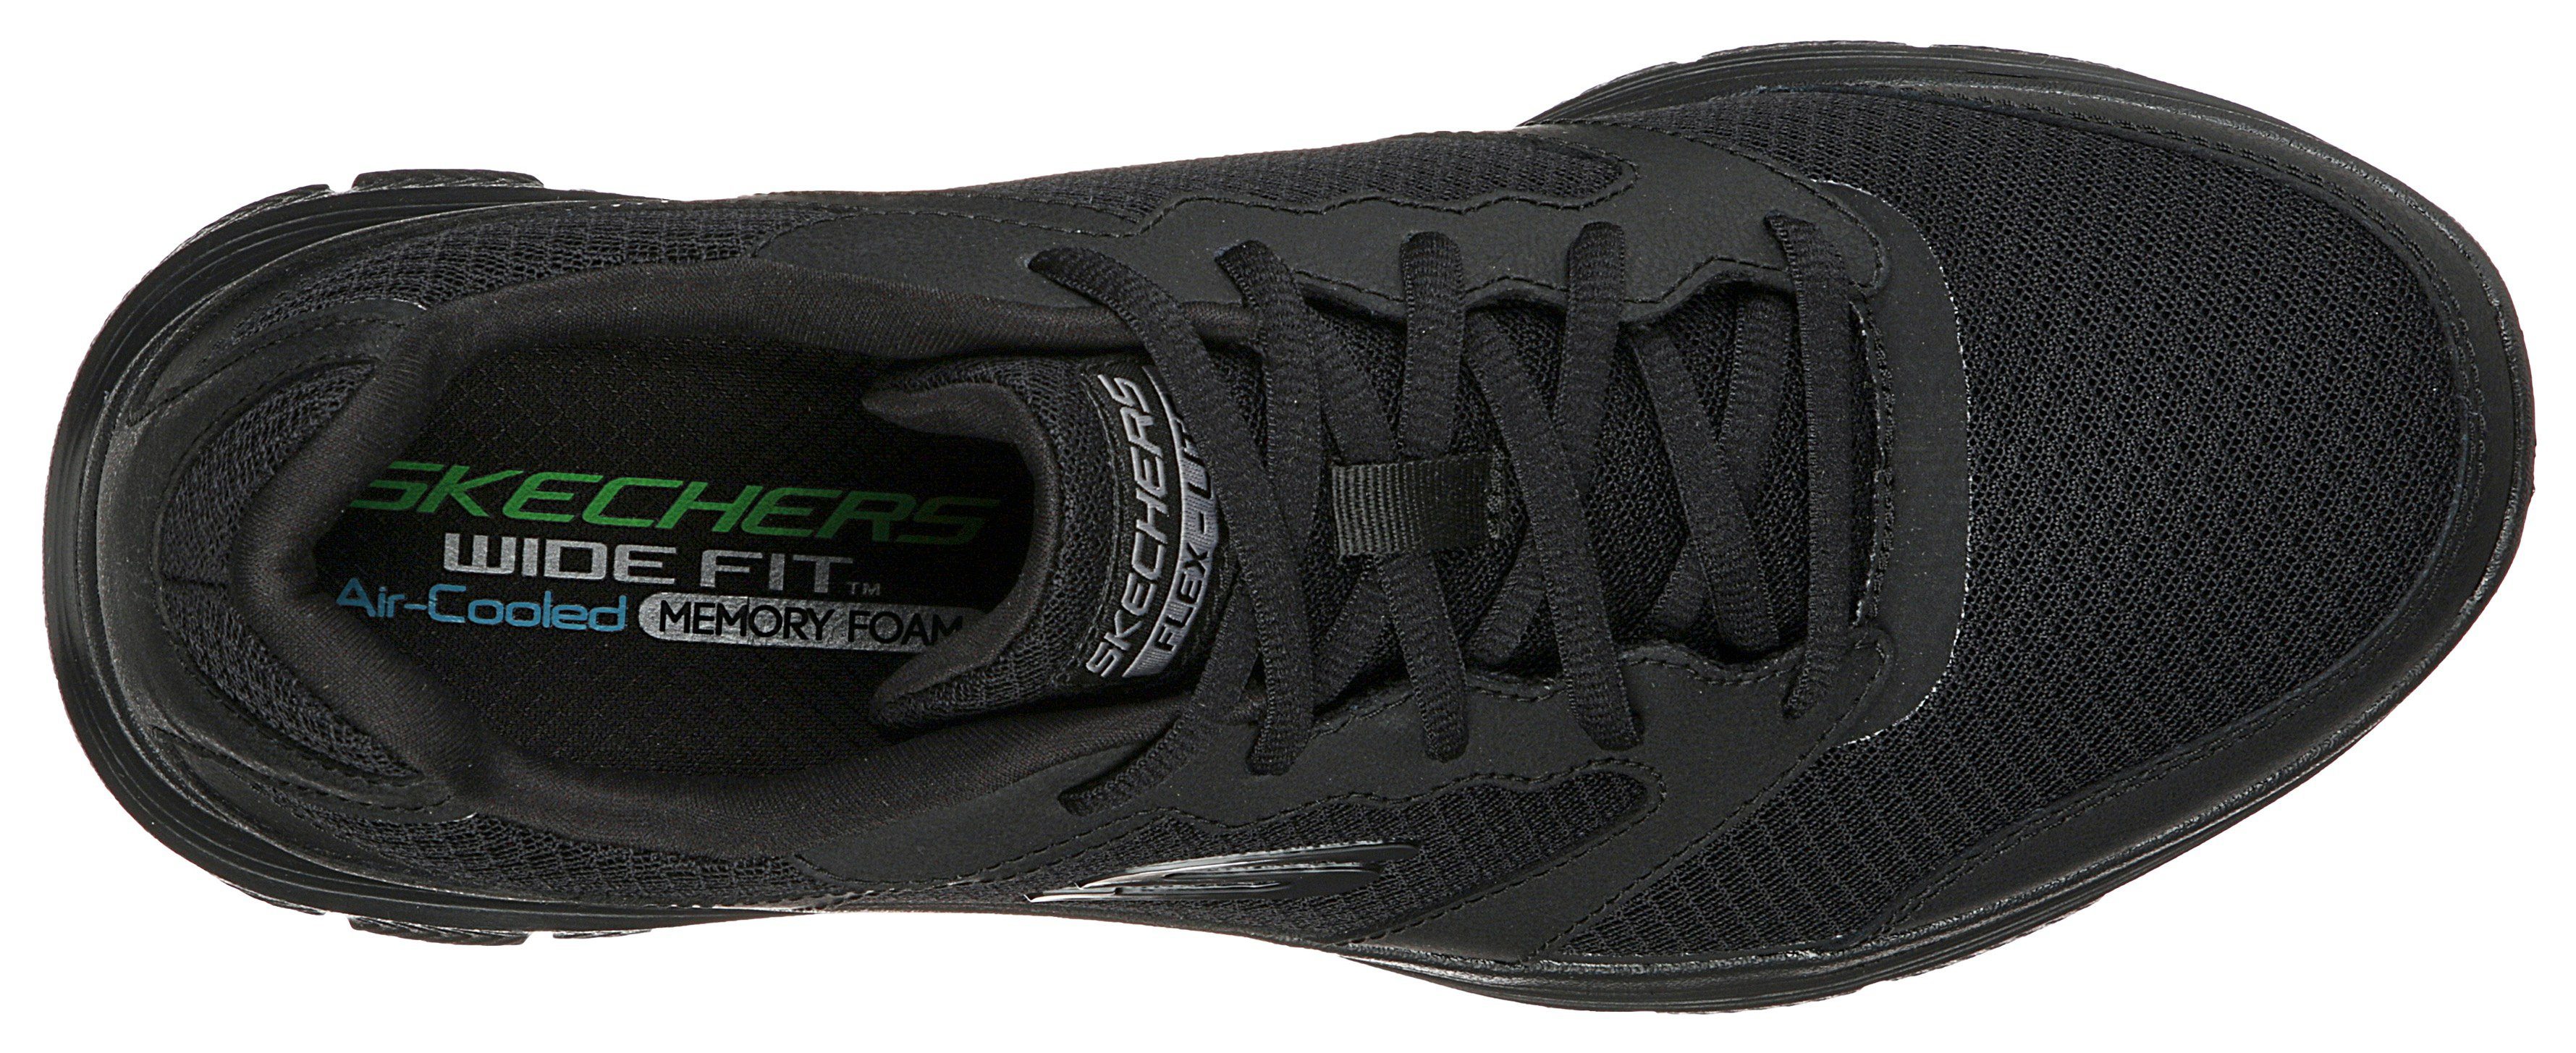 FLEX 4.0 Sneaker schwarz Skechers ADVANTAGE Profil leichtem mit